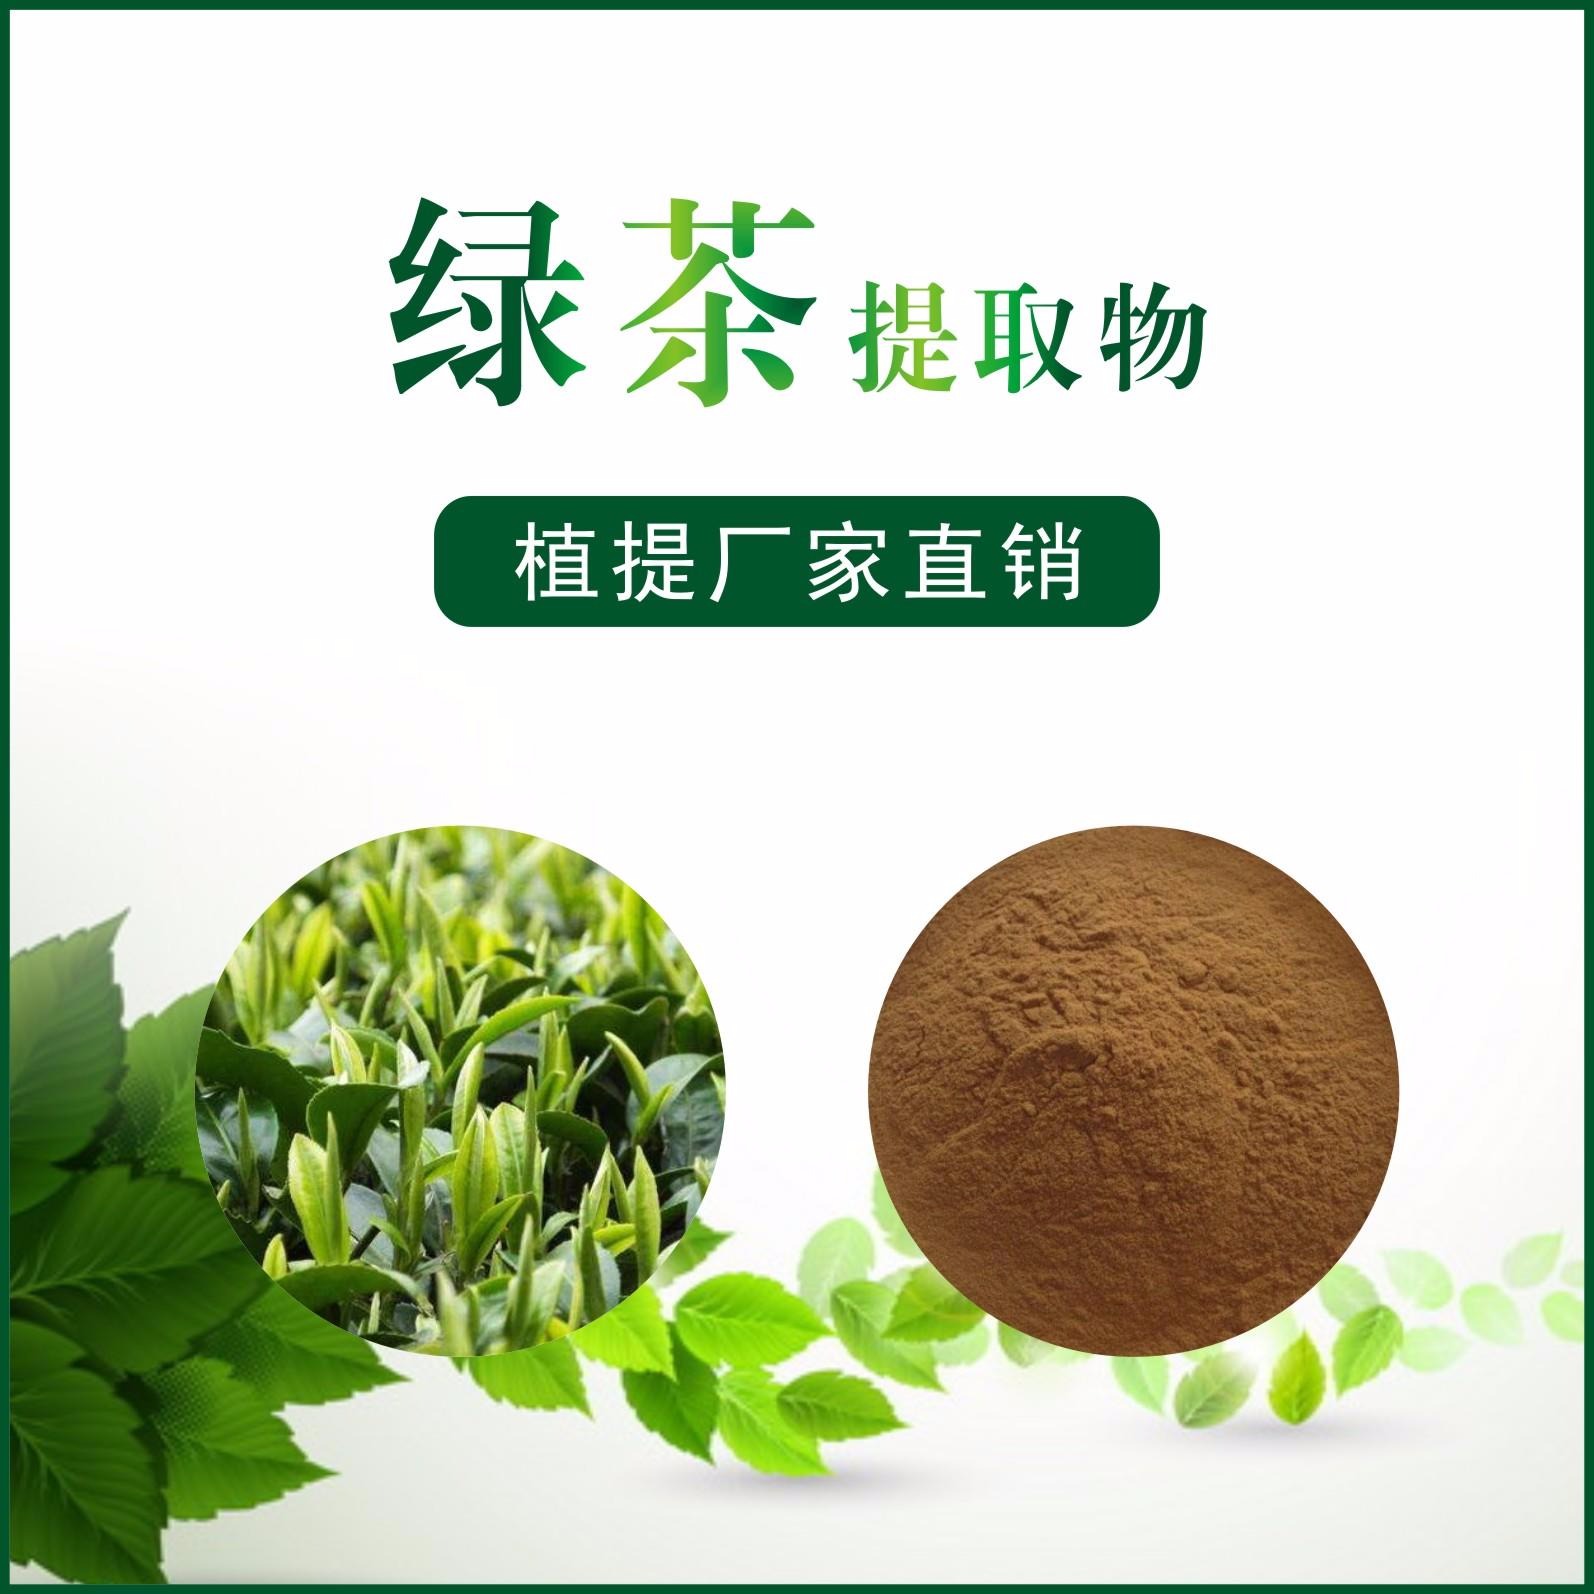 绿茶提取物,Green Tea Extract